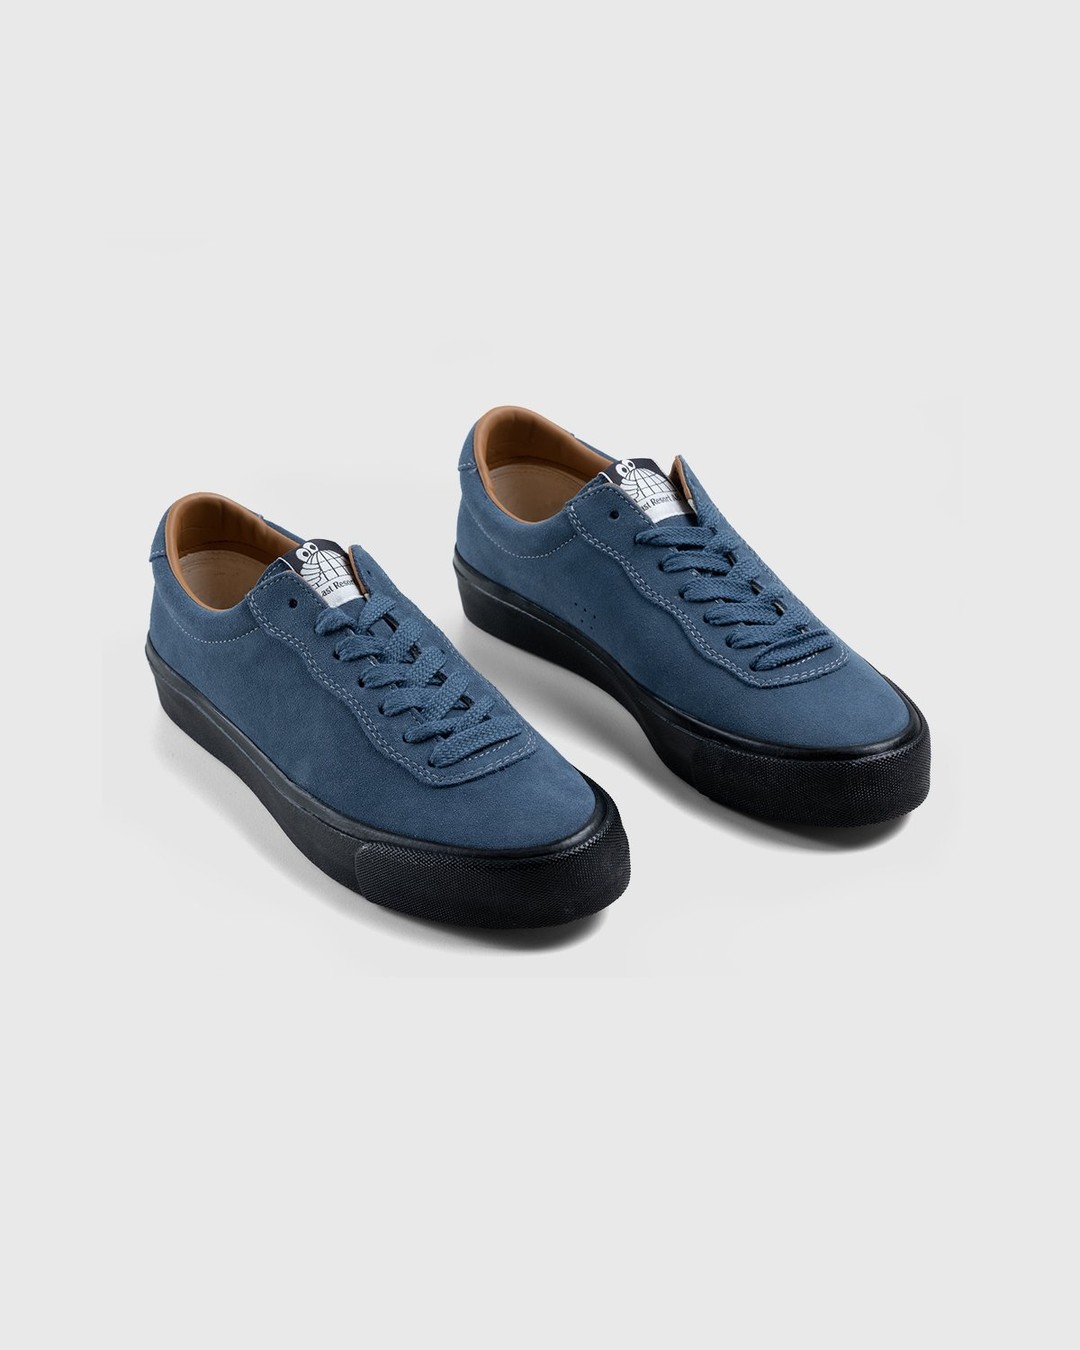 Last Resort AB – VM001 Suede Lo Blue/Black - Sneakers - Blue - Image 3